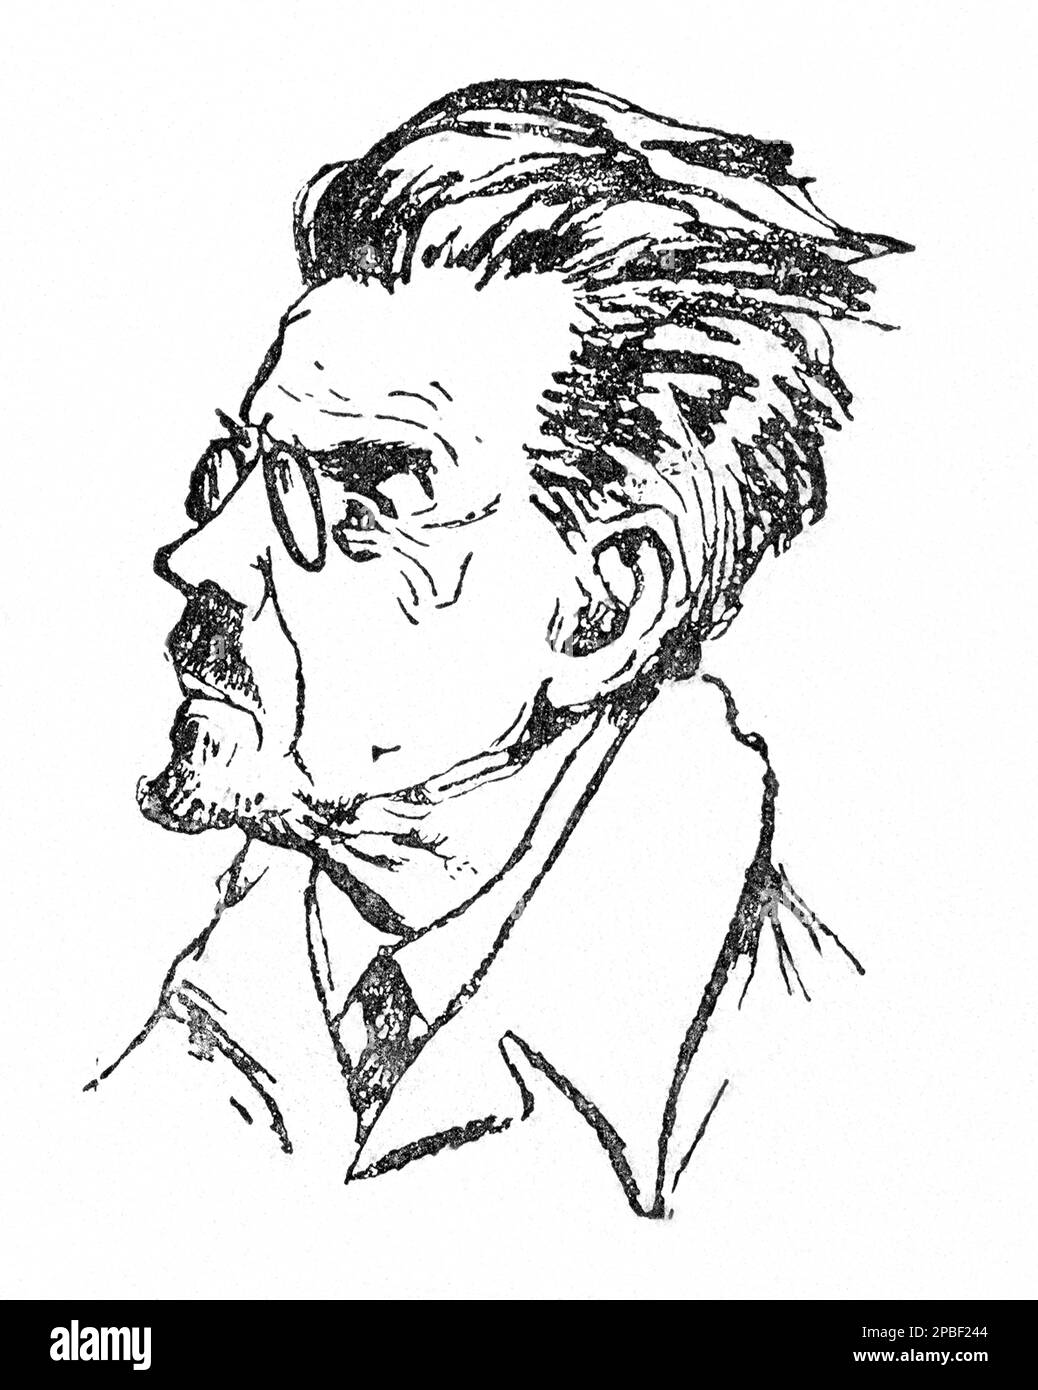 Il premio Nobel per la letteratura dello scrittore polacco nel 1924 LADISLAS REYMONT ( 1867 - 1925 ). La sua opera più famosa è il romanzo I CONTADINI ( 1904- 1909)- Wladyslaw Rejment - LETTERATO - SCRITTORE - LETTERATURA - LETTERATURA - ritrato - barba - barba - premio NOBEL PER LA LETTERATURA - cravatta - cravatta - colletto - colletto - lente - occhiali ---- Archivio GBB Foto Stock